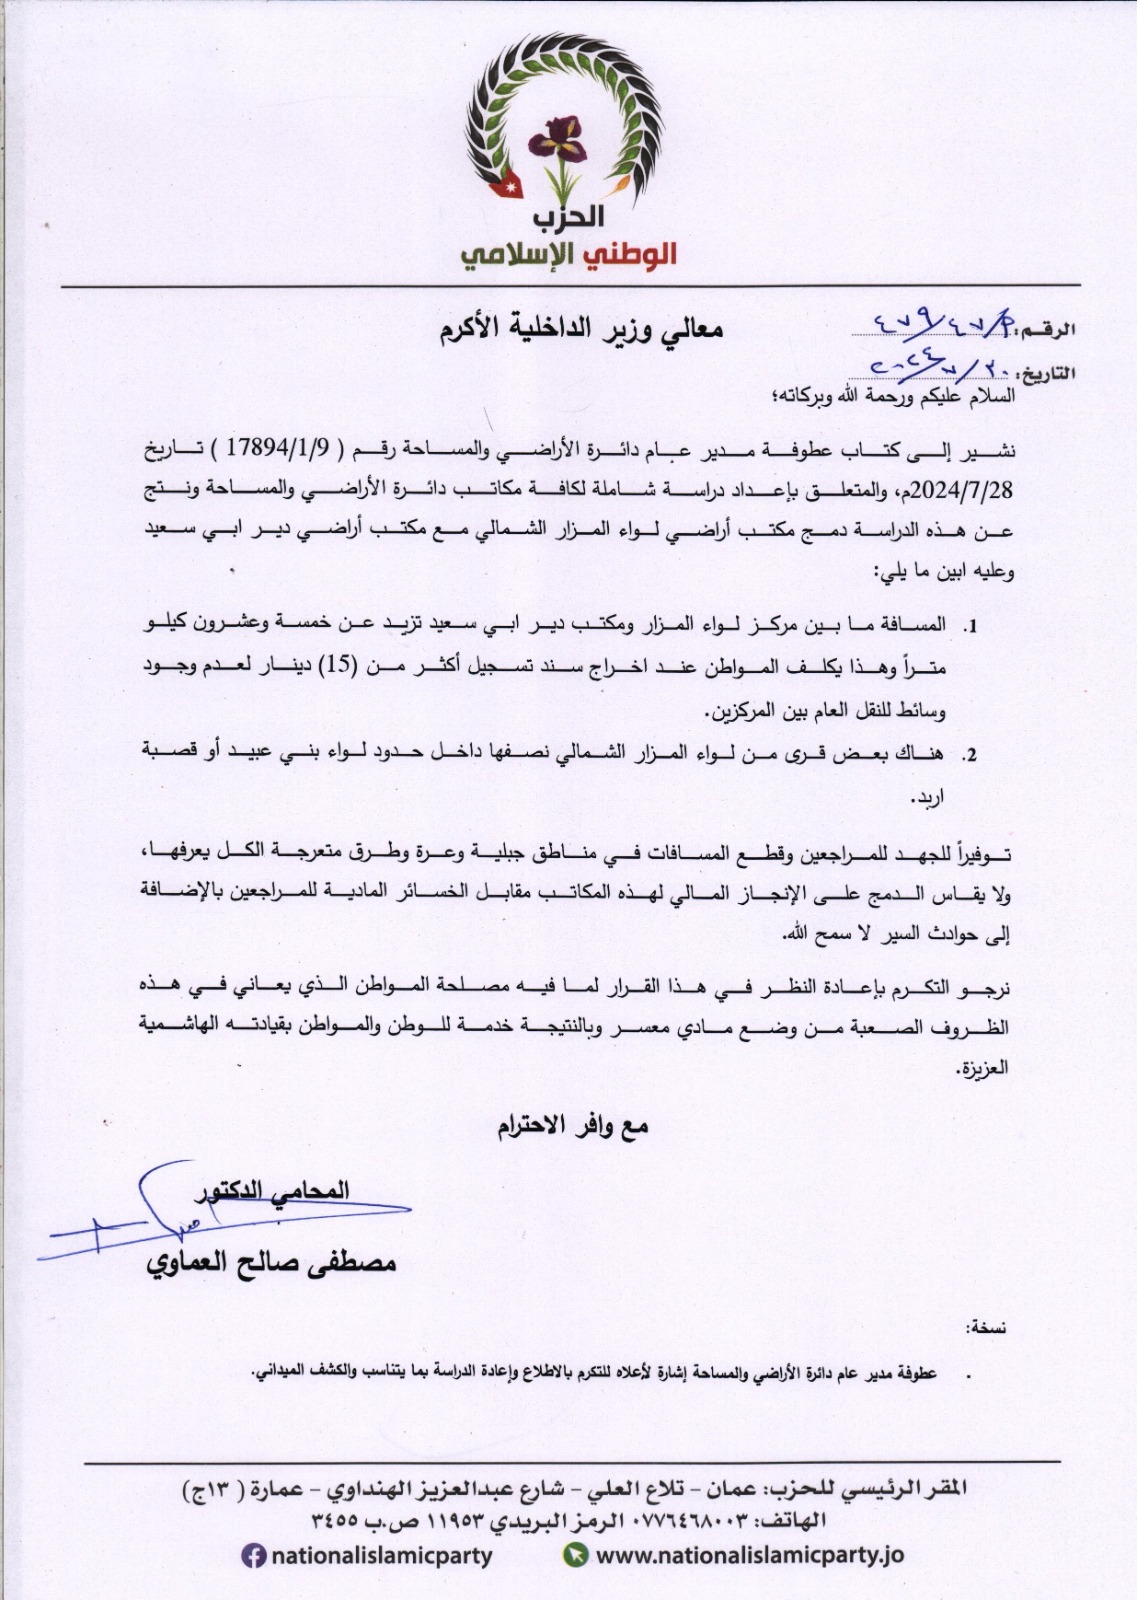 الحزب الوطني الإسلامي يطالب الداخلية بإعادة النظر بدمج مكتبي أراضي المزار الشمالي ودير ابي سعيد